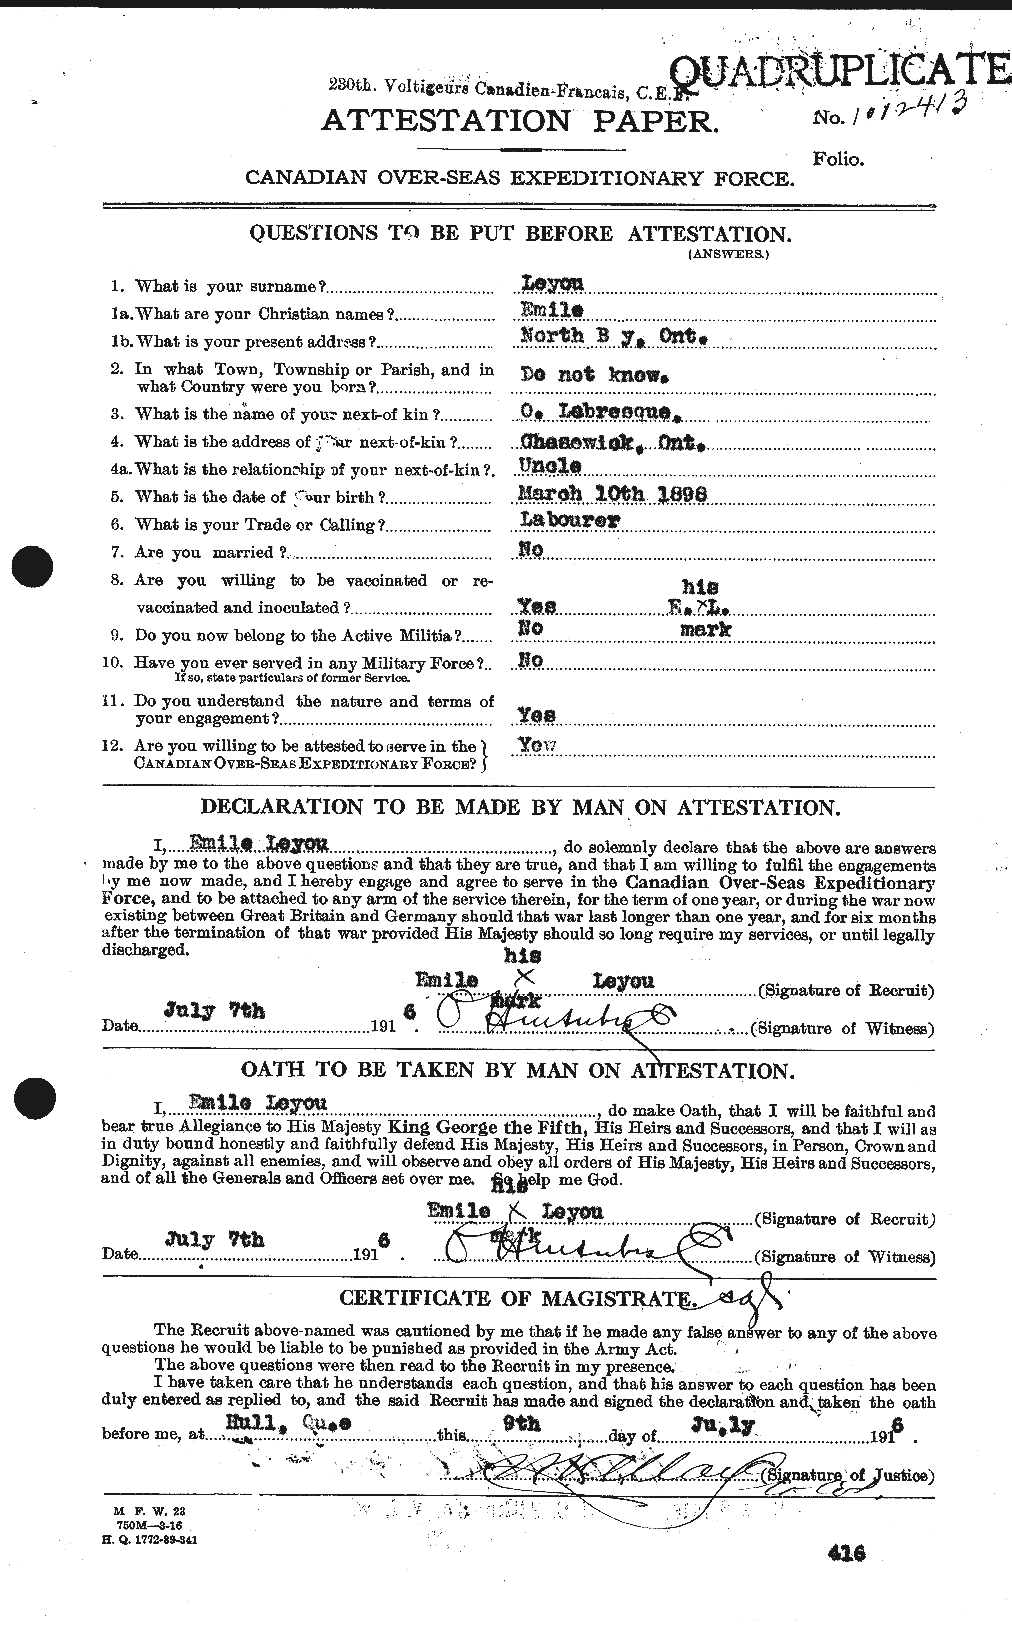 Dossiers du Personnel de la Première Guerre mondiale - CEC 466954a